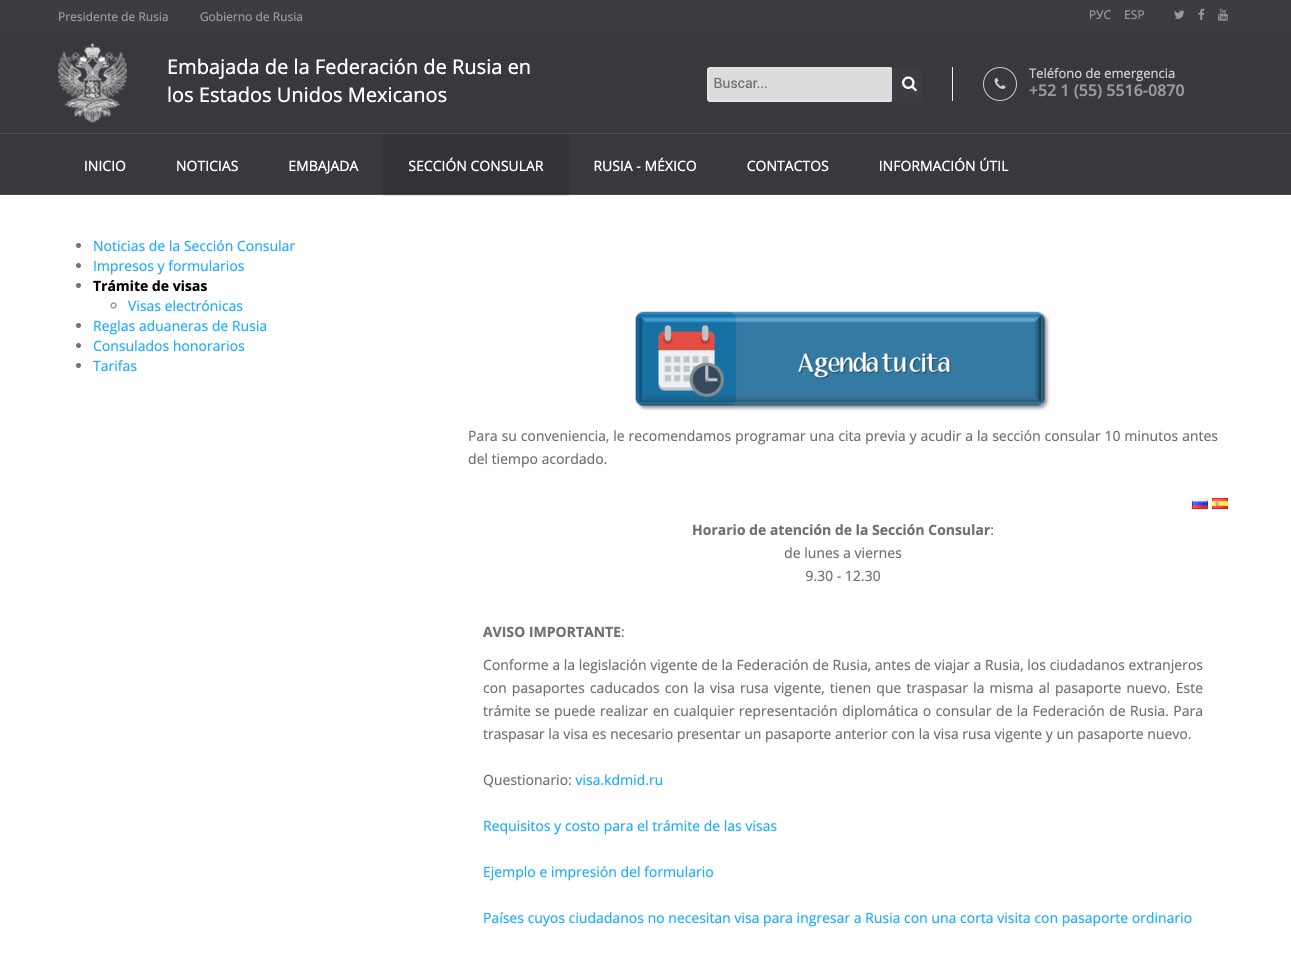 Tramite de visas - Sitio web Embajada de la Federación de Rusia en los Estados Unidos Mexicanos